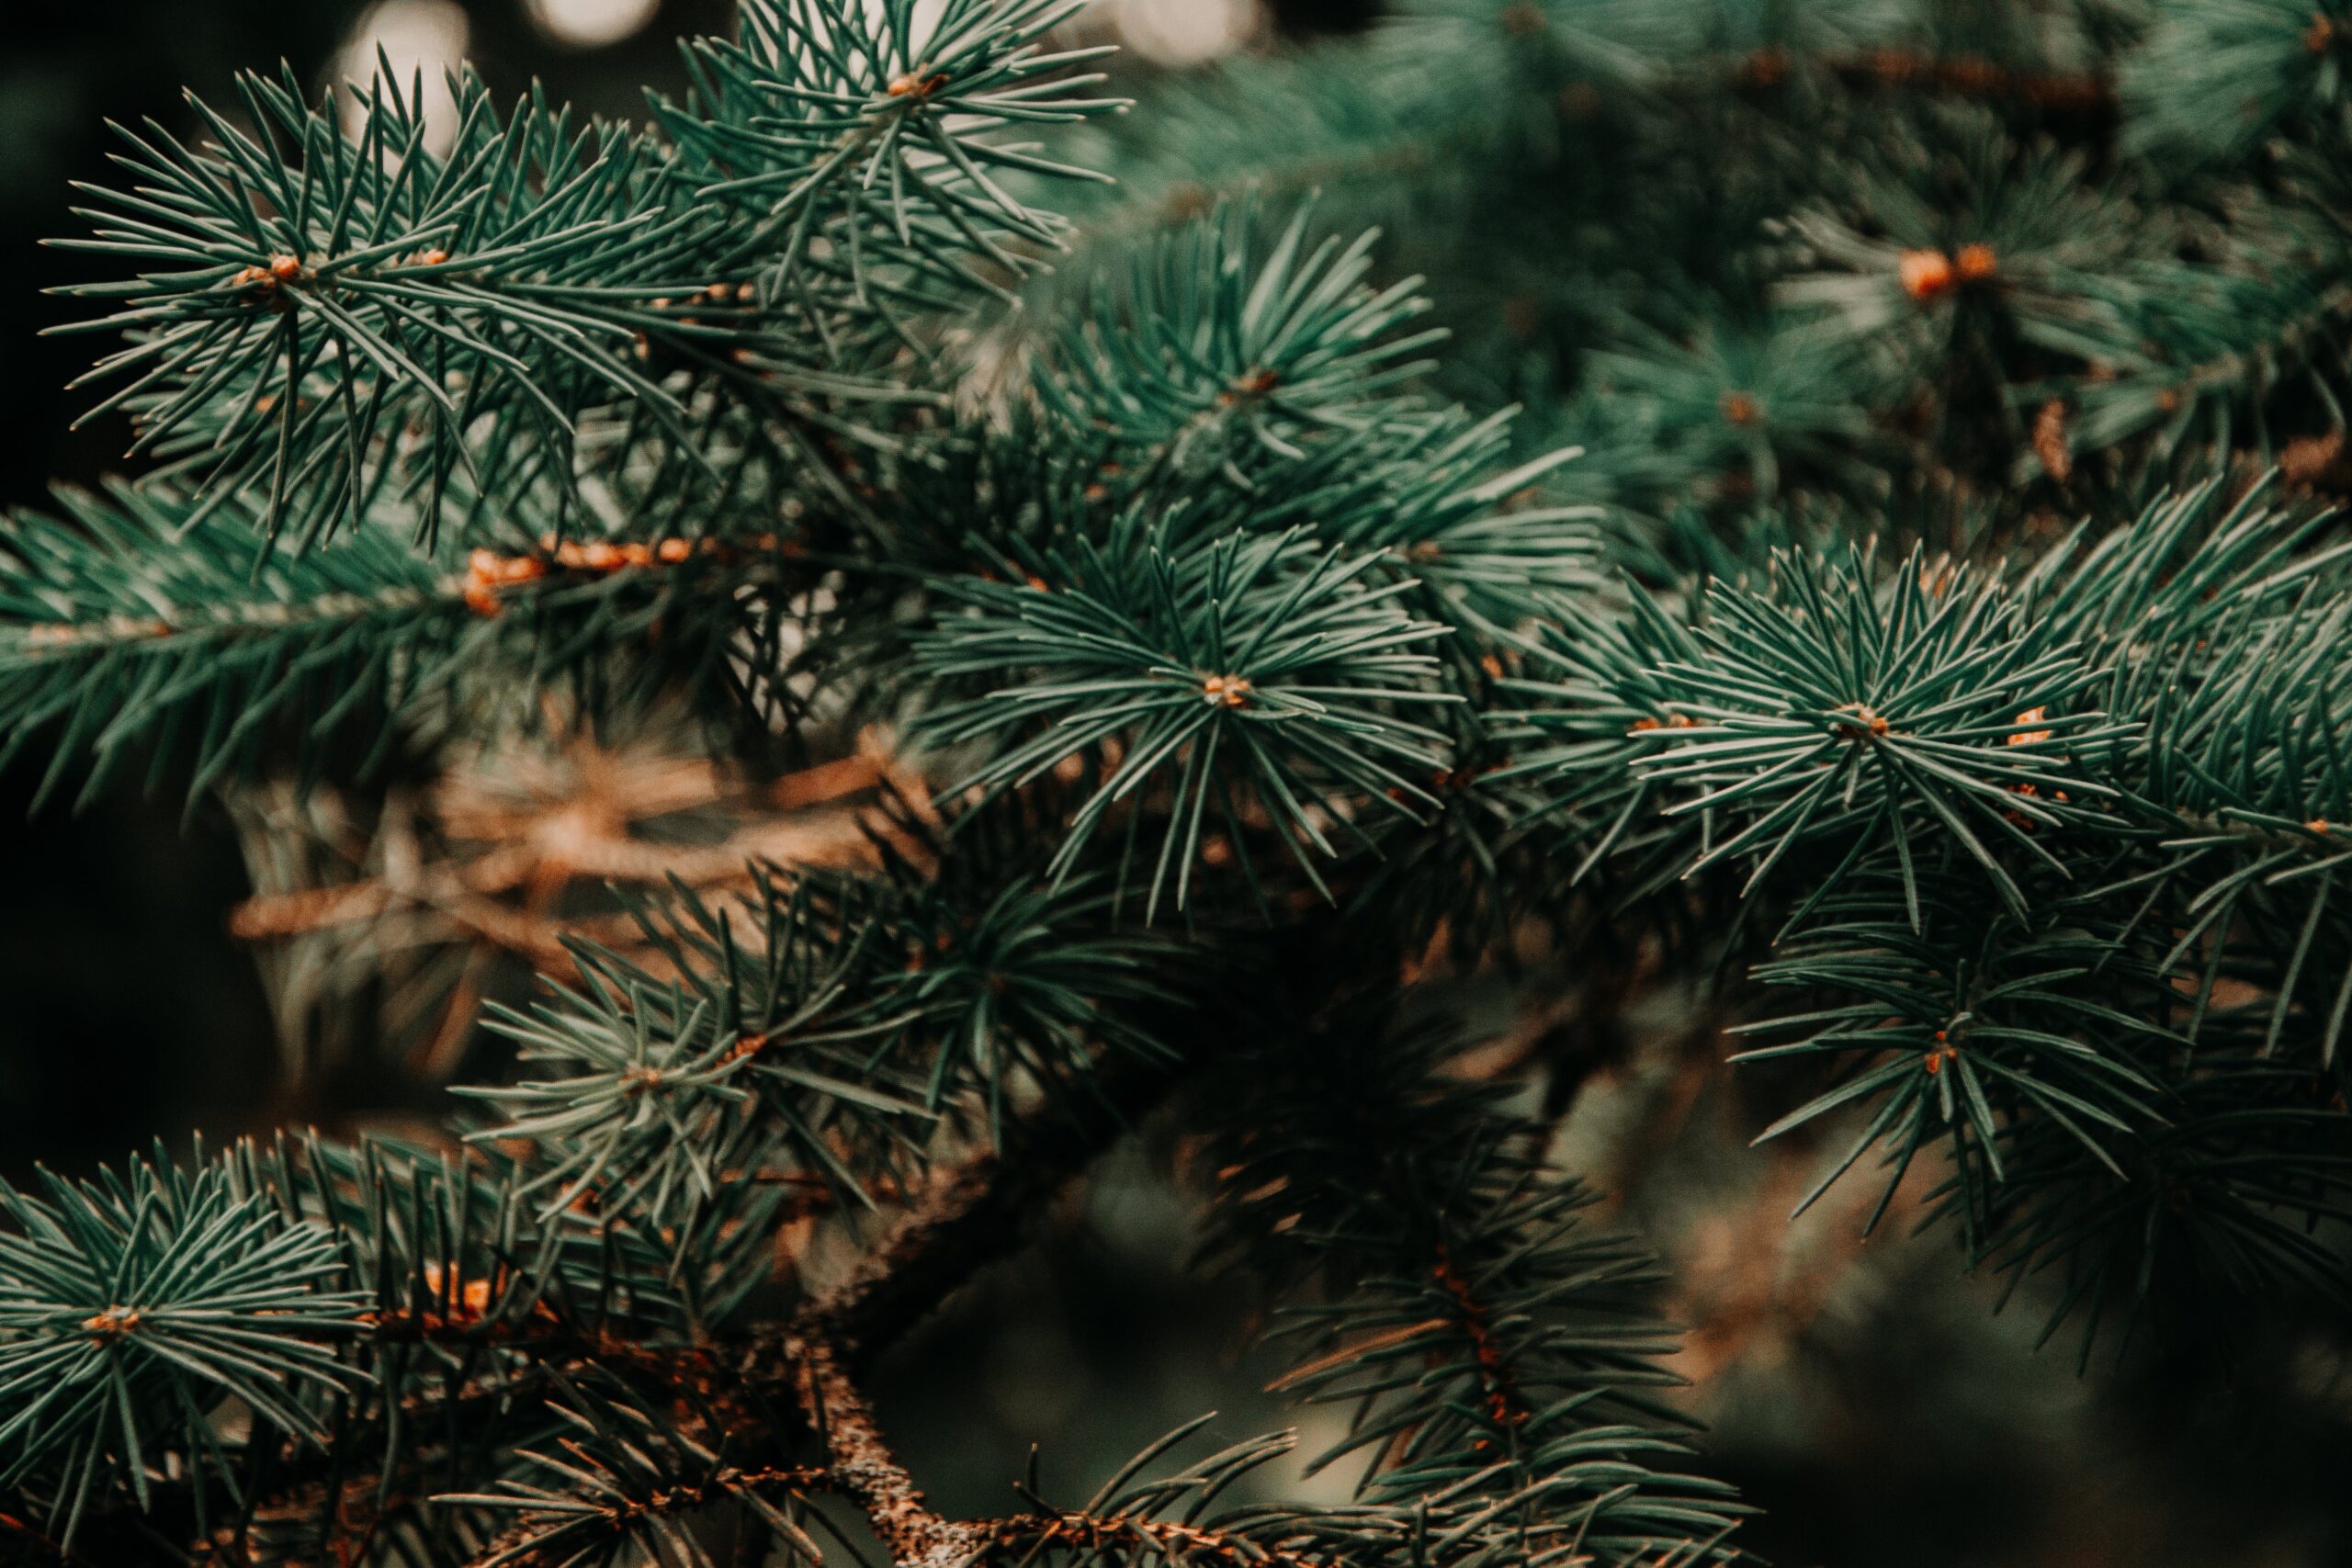 A closeup of a pine tree